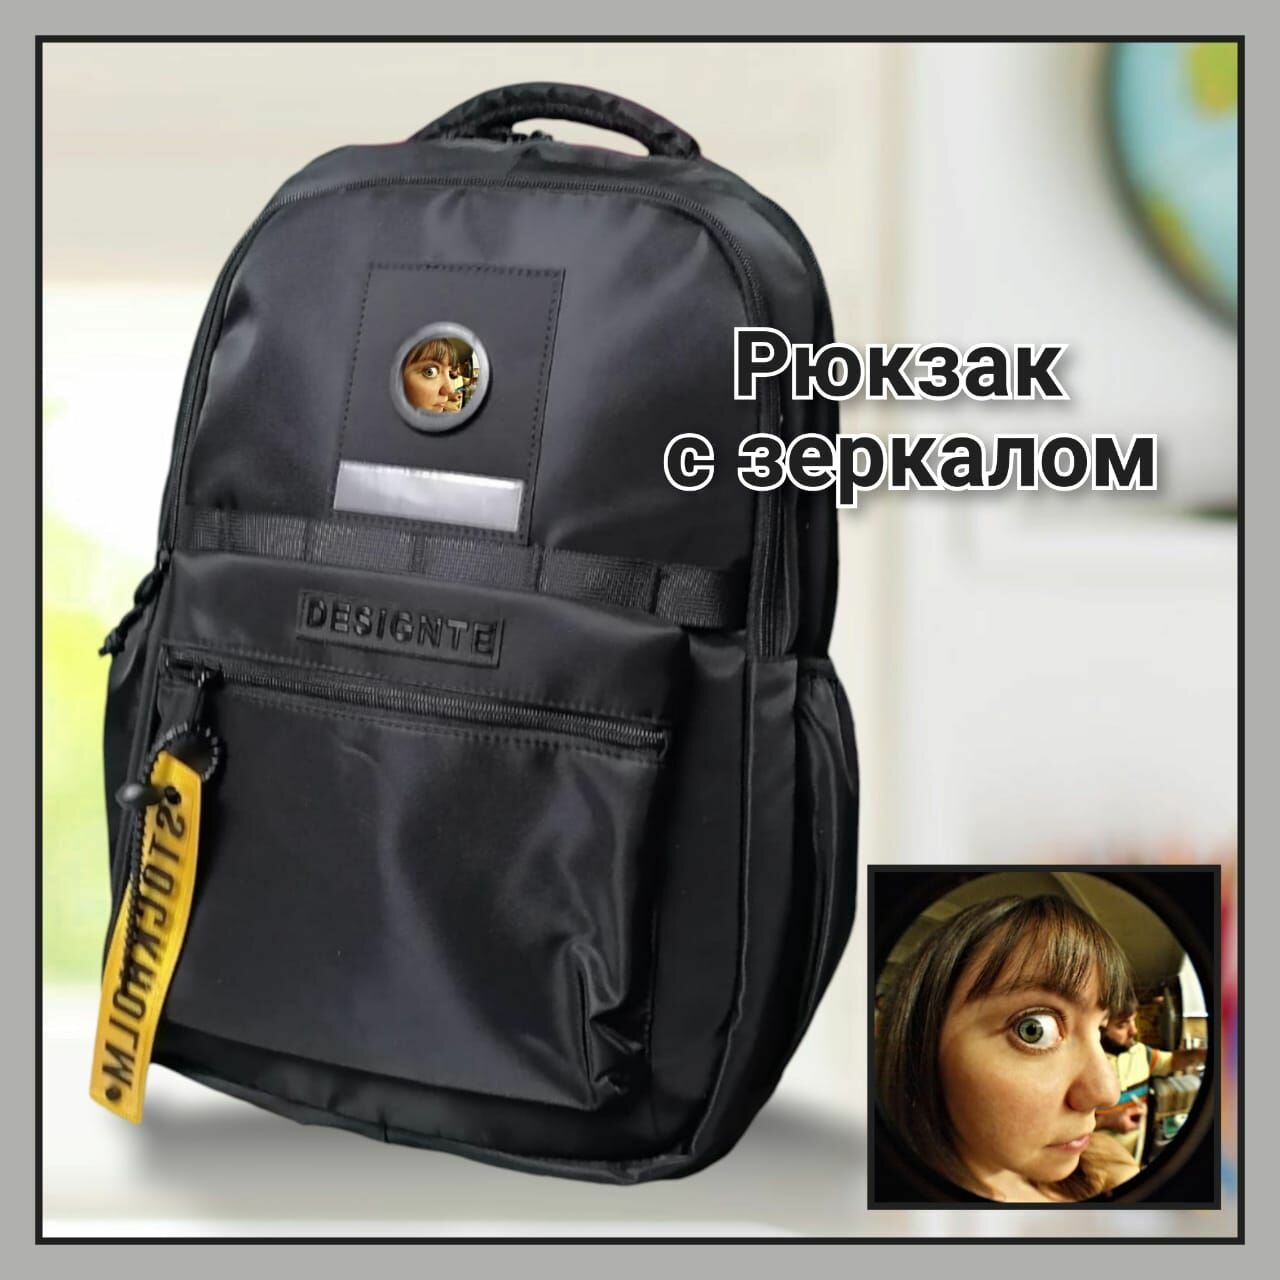 Черный вместительный повседневный рюкзак с зеркалом, объём 30л для школы, института, работы, путешествий, тренировок